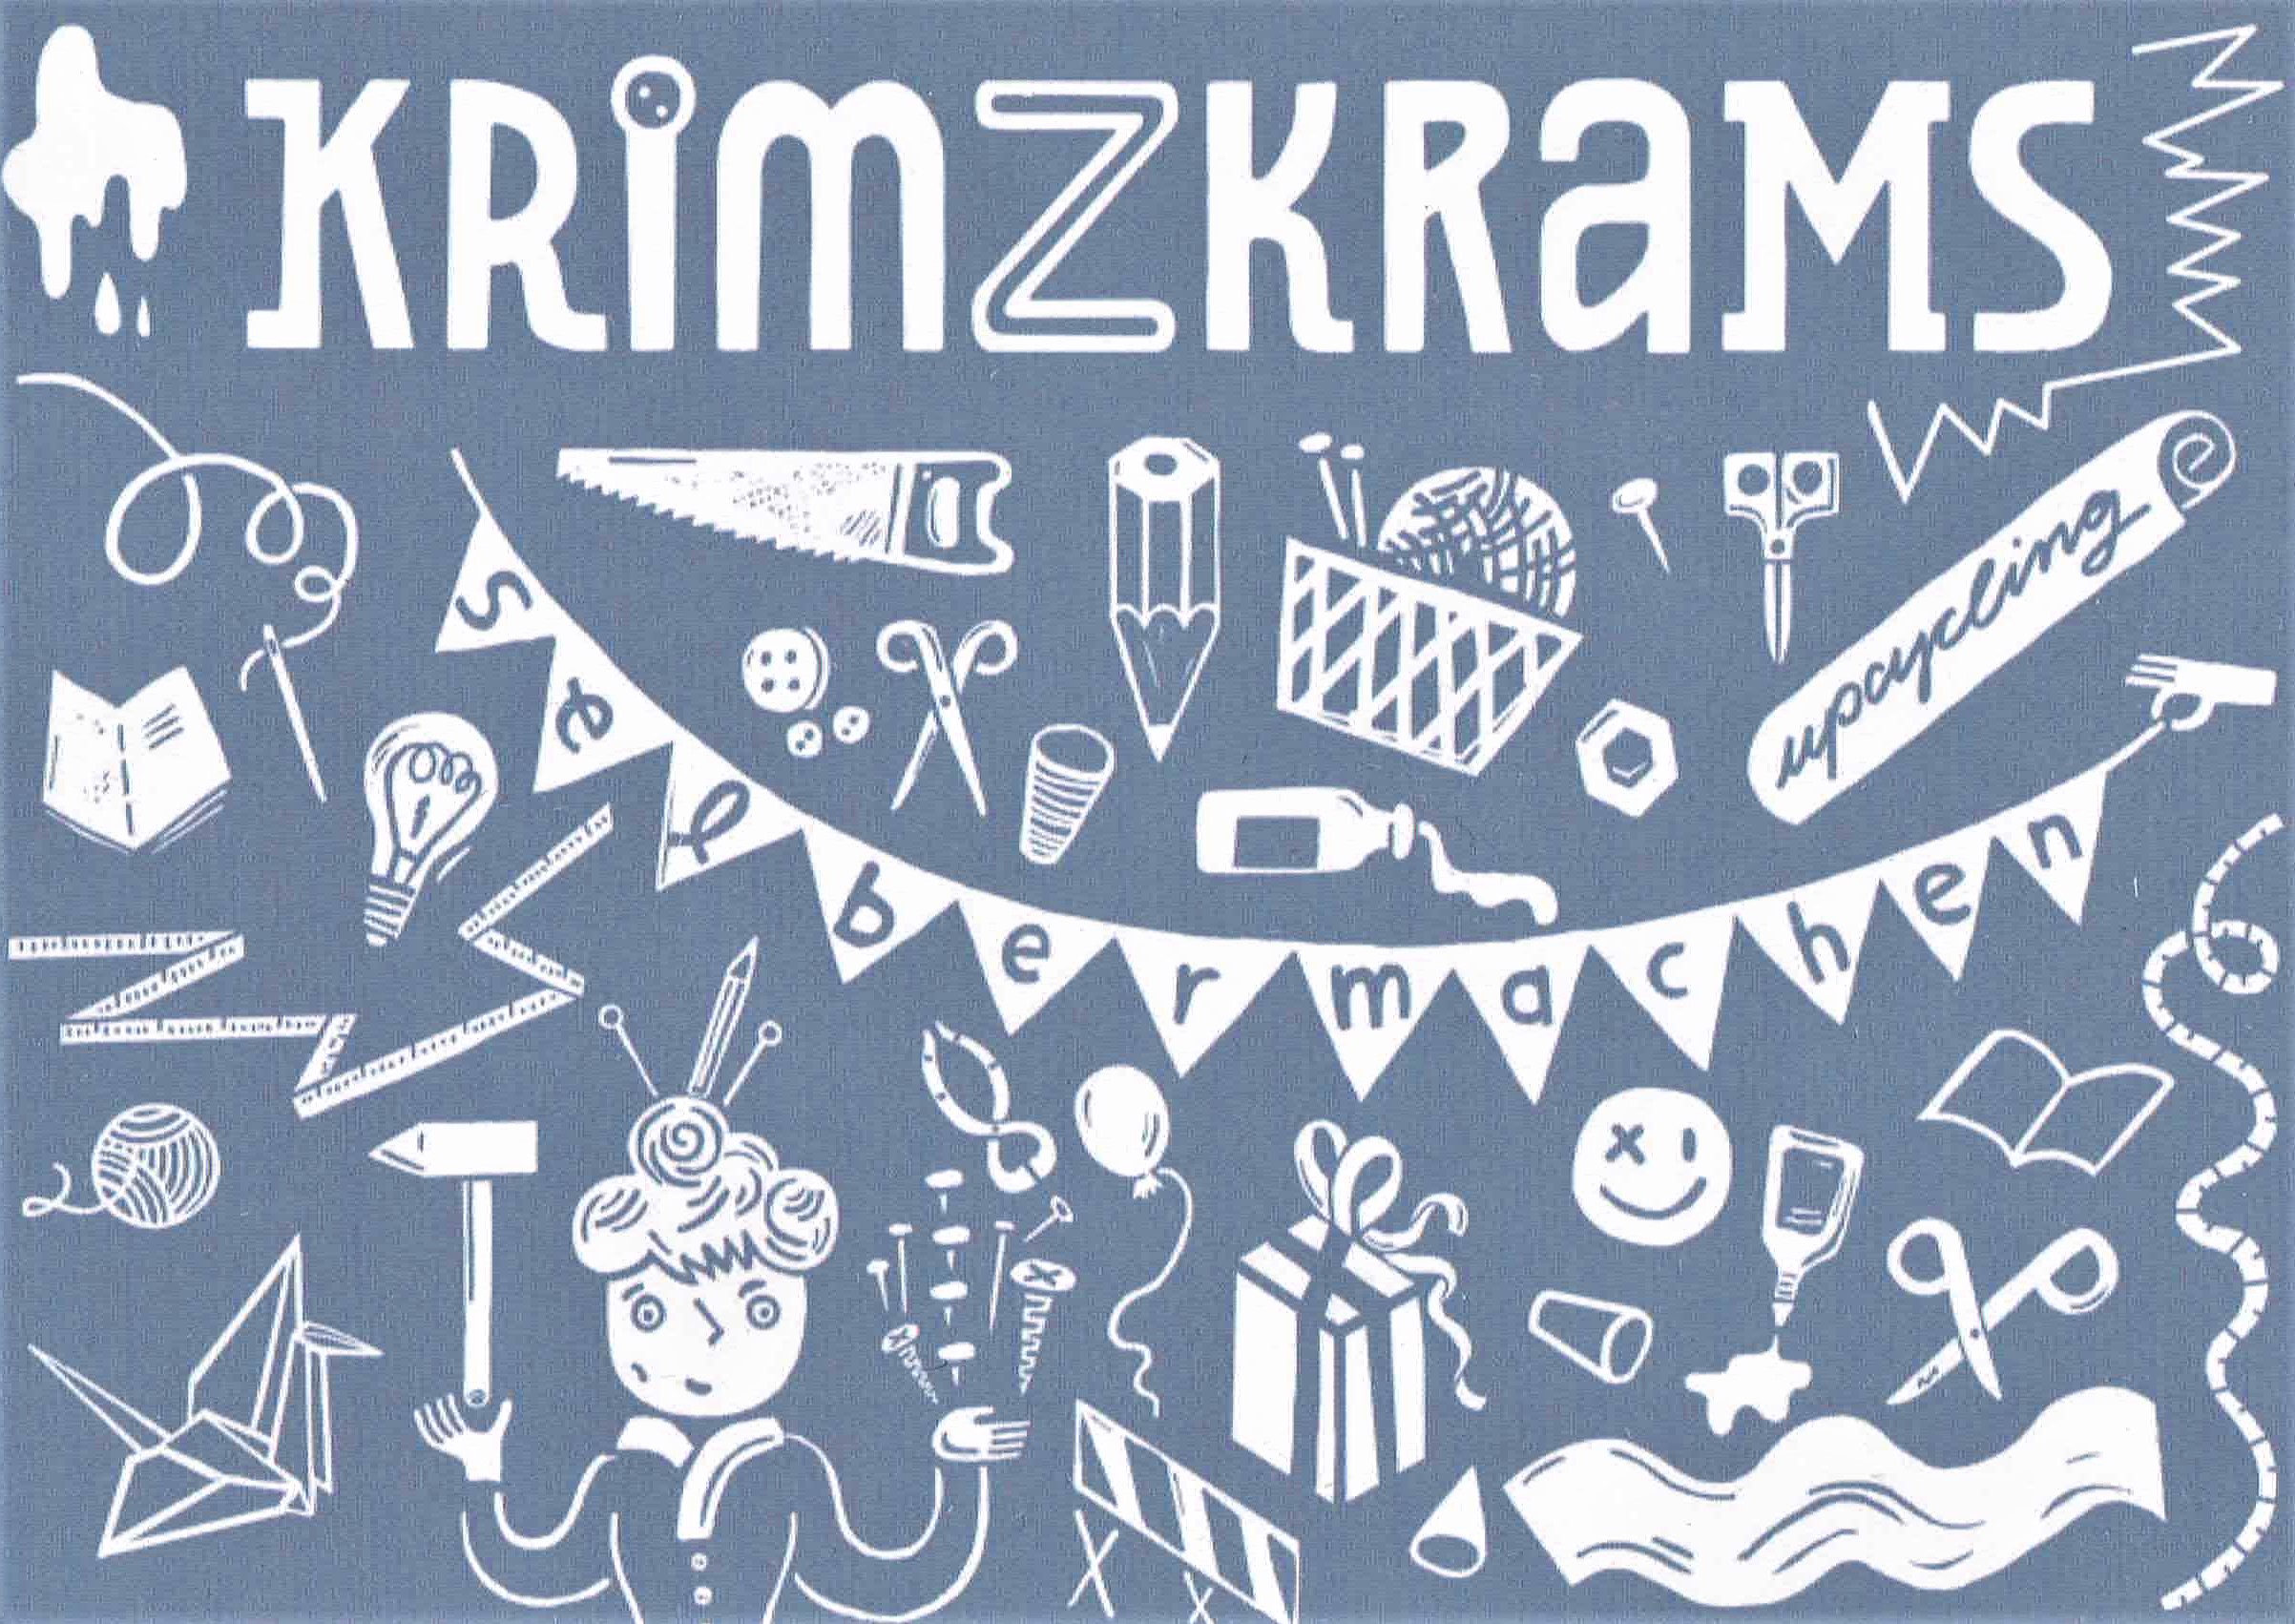 Das Bild zeigt den Flyer vom Krimzkrams Laden in Halle. Grafissch stilisierte Werkzeuge und Materialien.